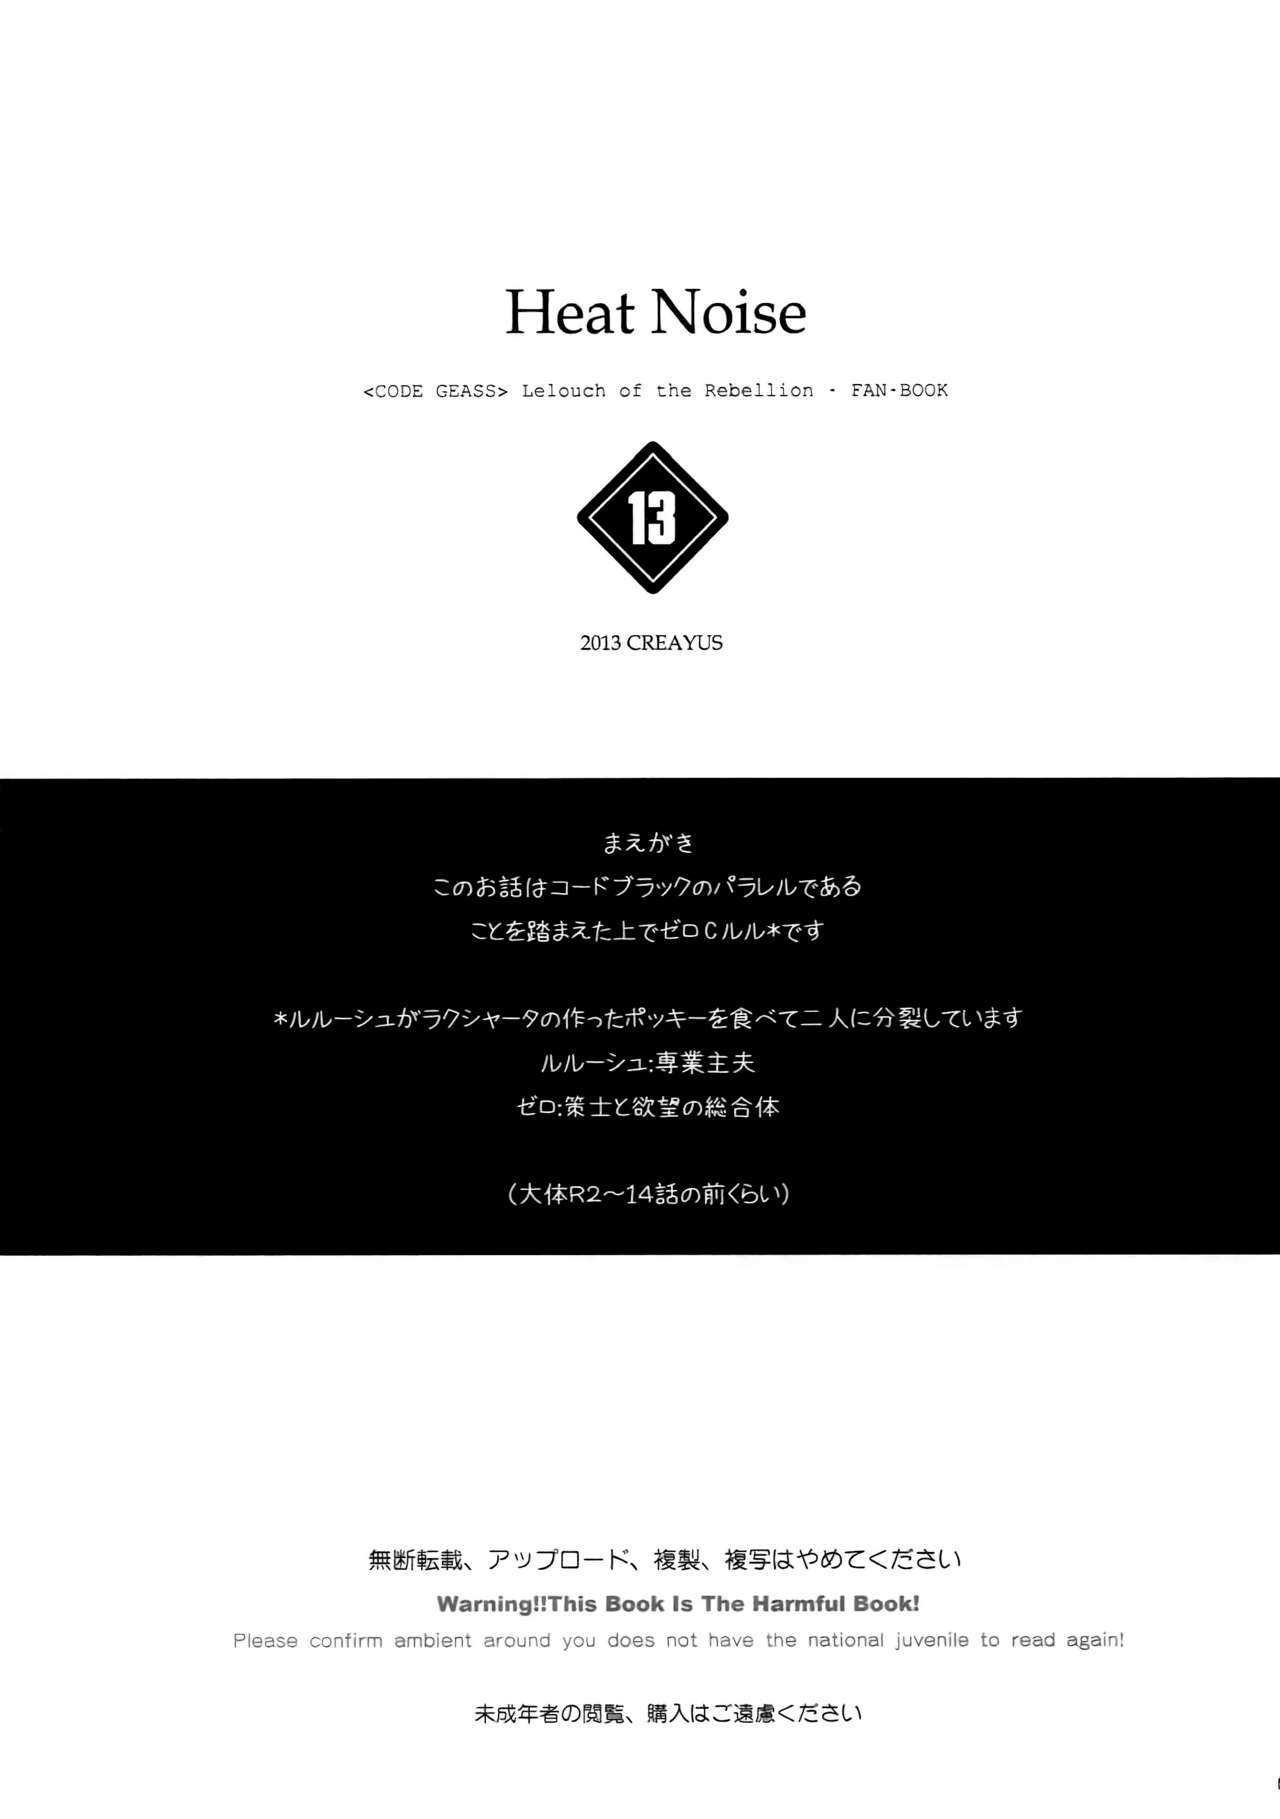 Code Geass Lelouch Of The Rebellion - Heat Noise - 3